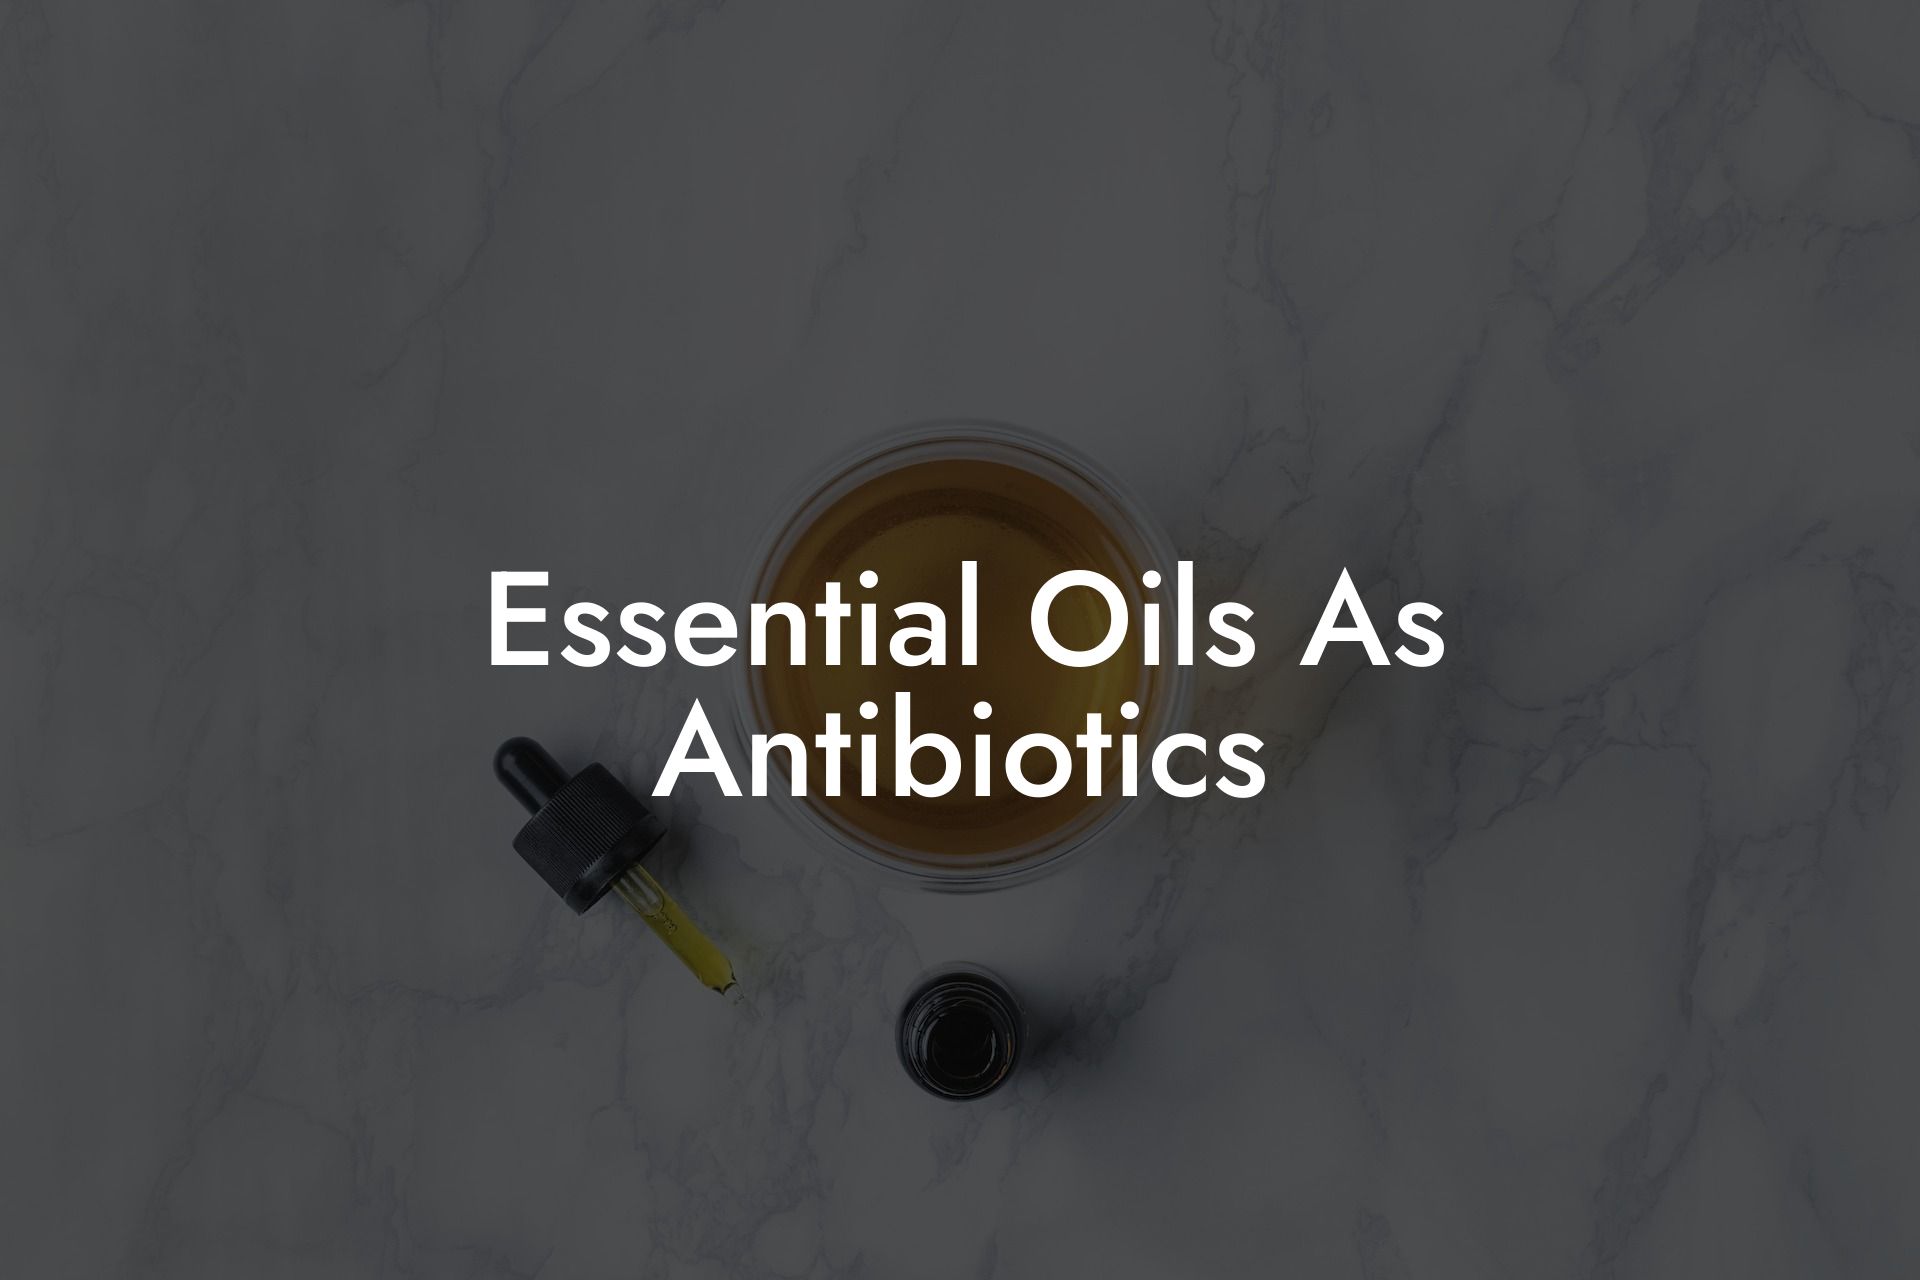 Essential Oils As Antibiotics